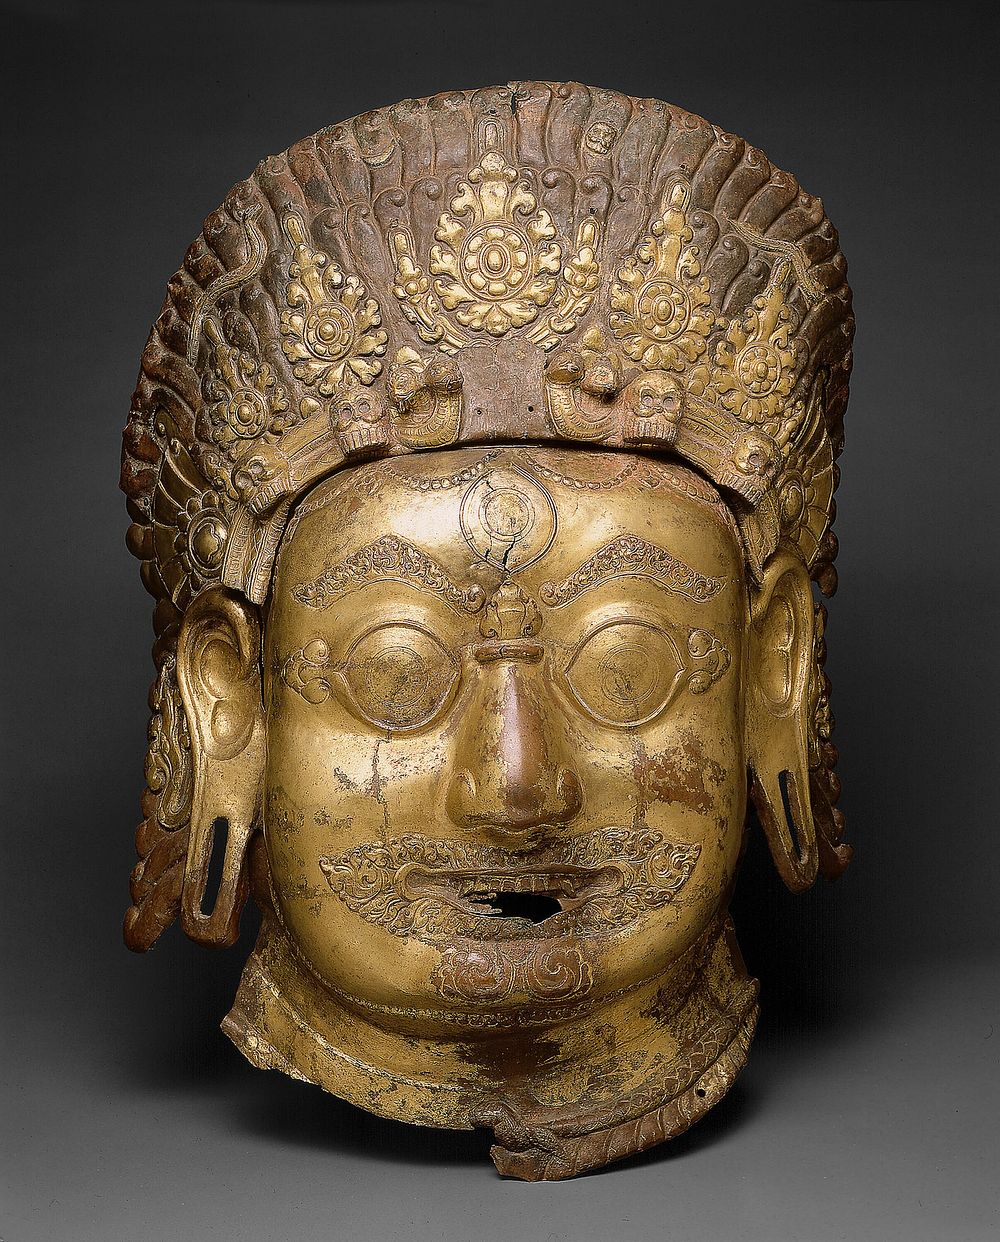 Head of Bhairava, A Horrific Form of God Shiva